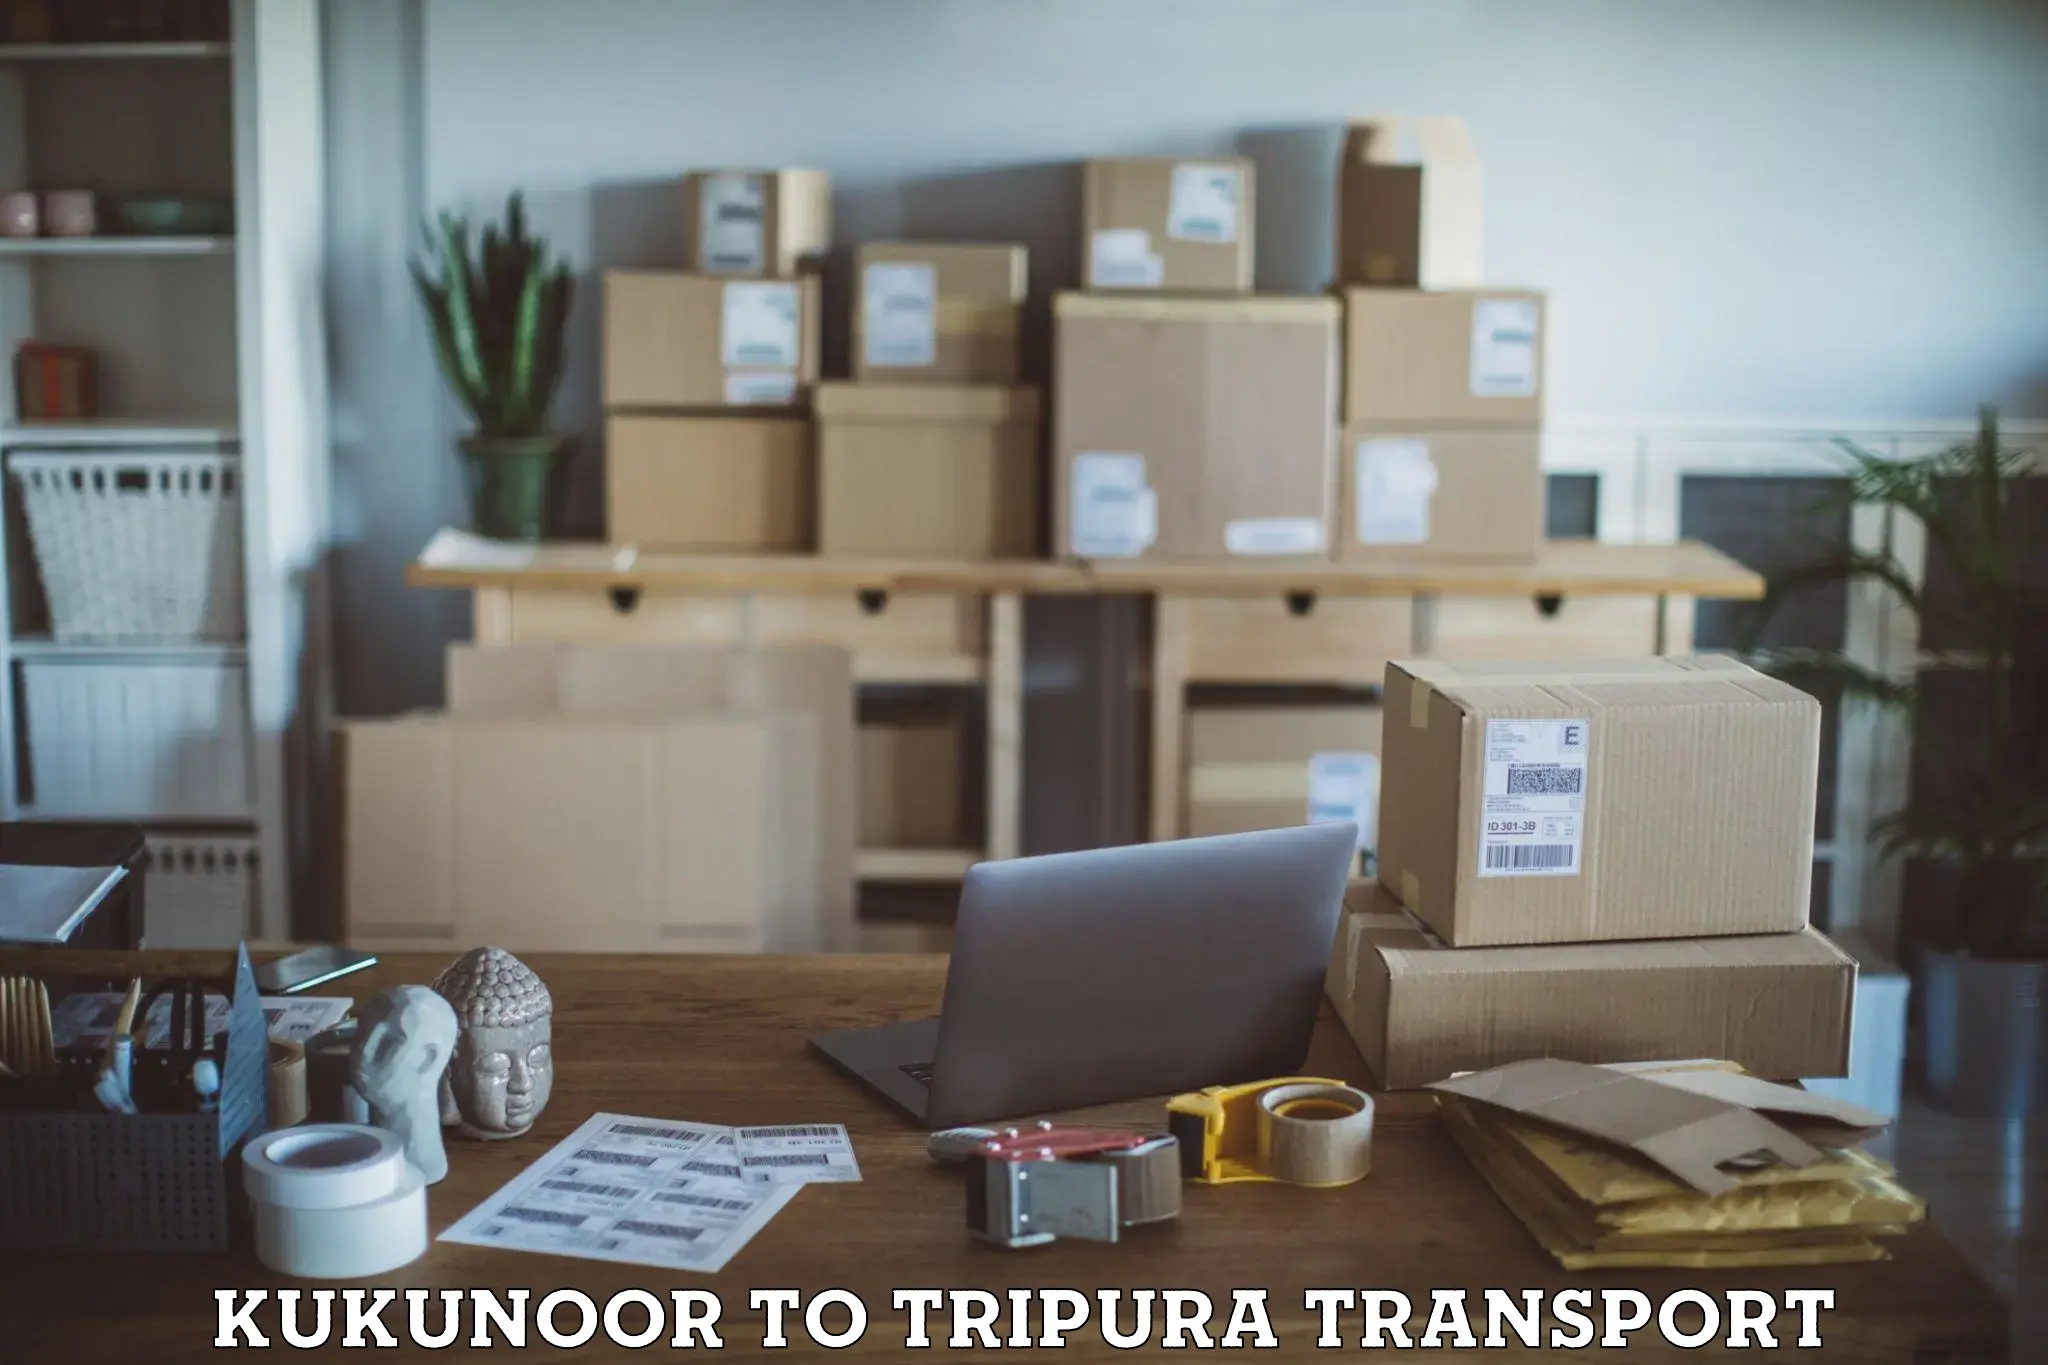 Commercial transport service Kukunoor to West Tripura